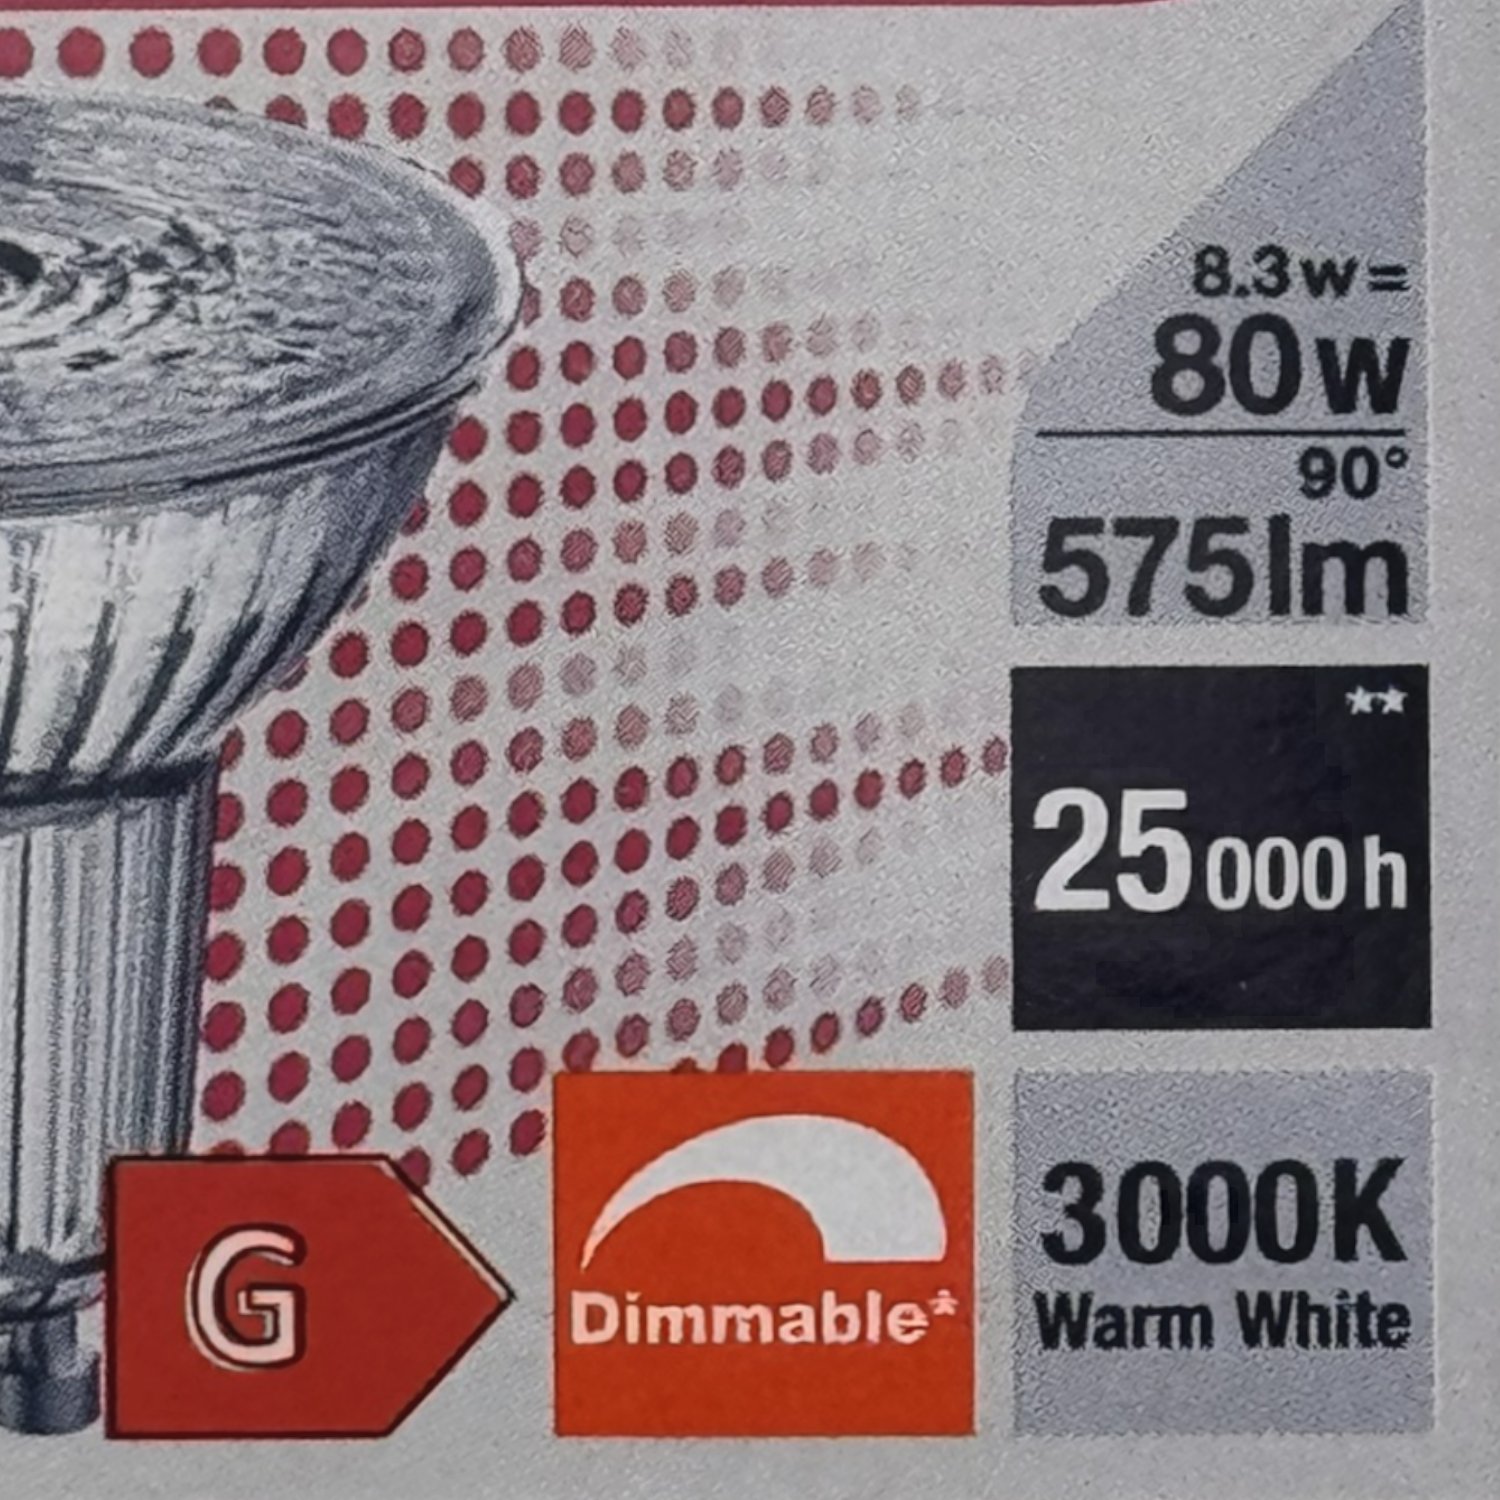 6x Osram Parathom LED Lampen PAR16, 80W, 3000K warm white, GU10, 575lm, dimmable